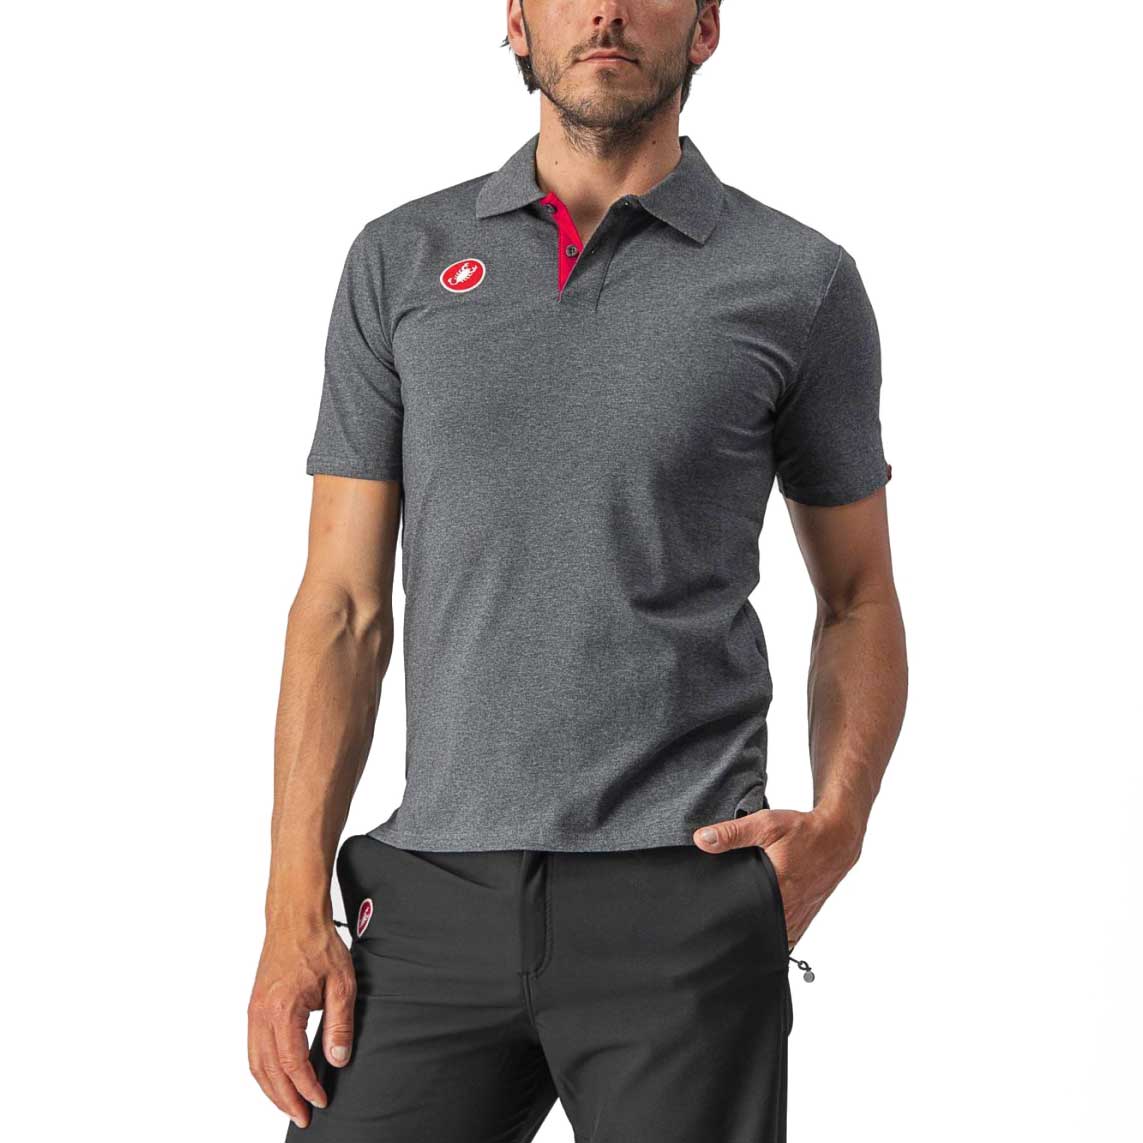 Produktbild von Castelli Race Day Polo Shirt Herren - melange grey 006